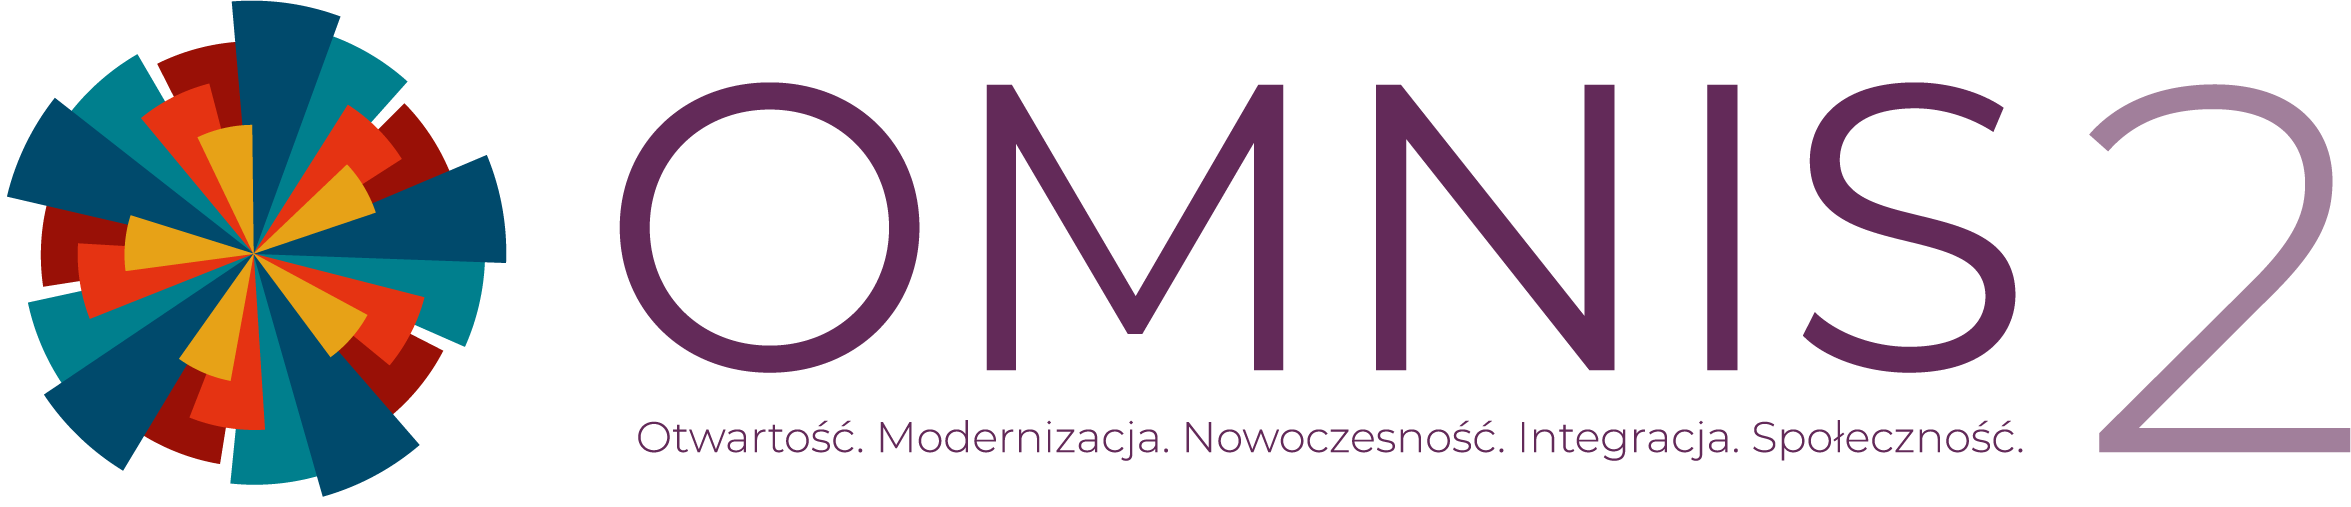 Logotyp projektu OMNIS2 Otwartość. Modernizacja. Nowoczesność. Integracja. Społeczność.